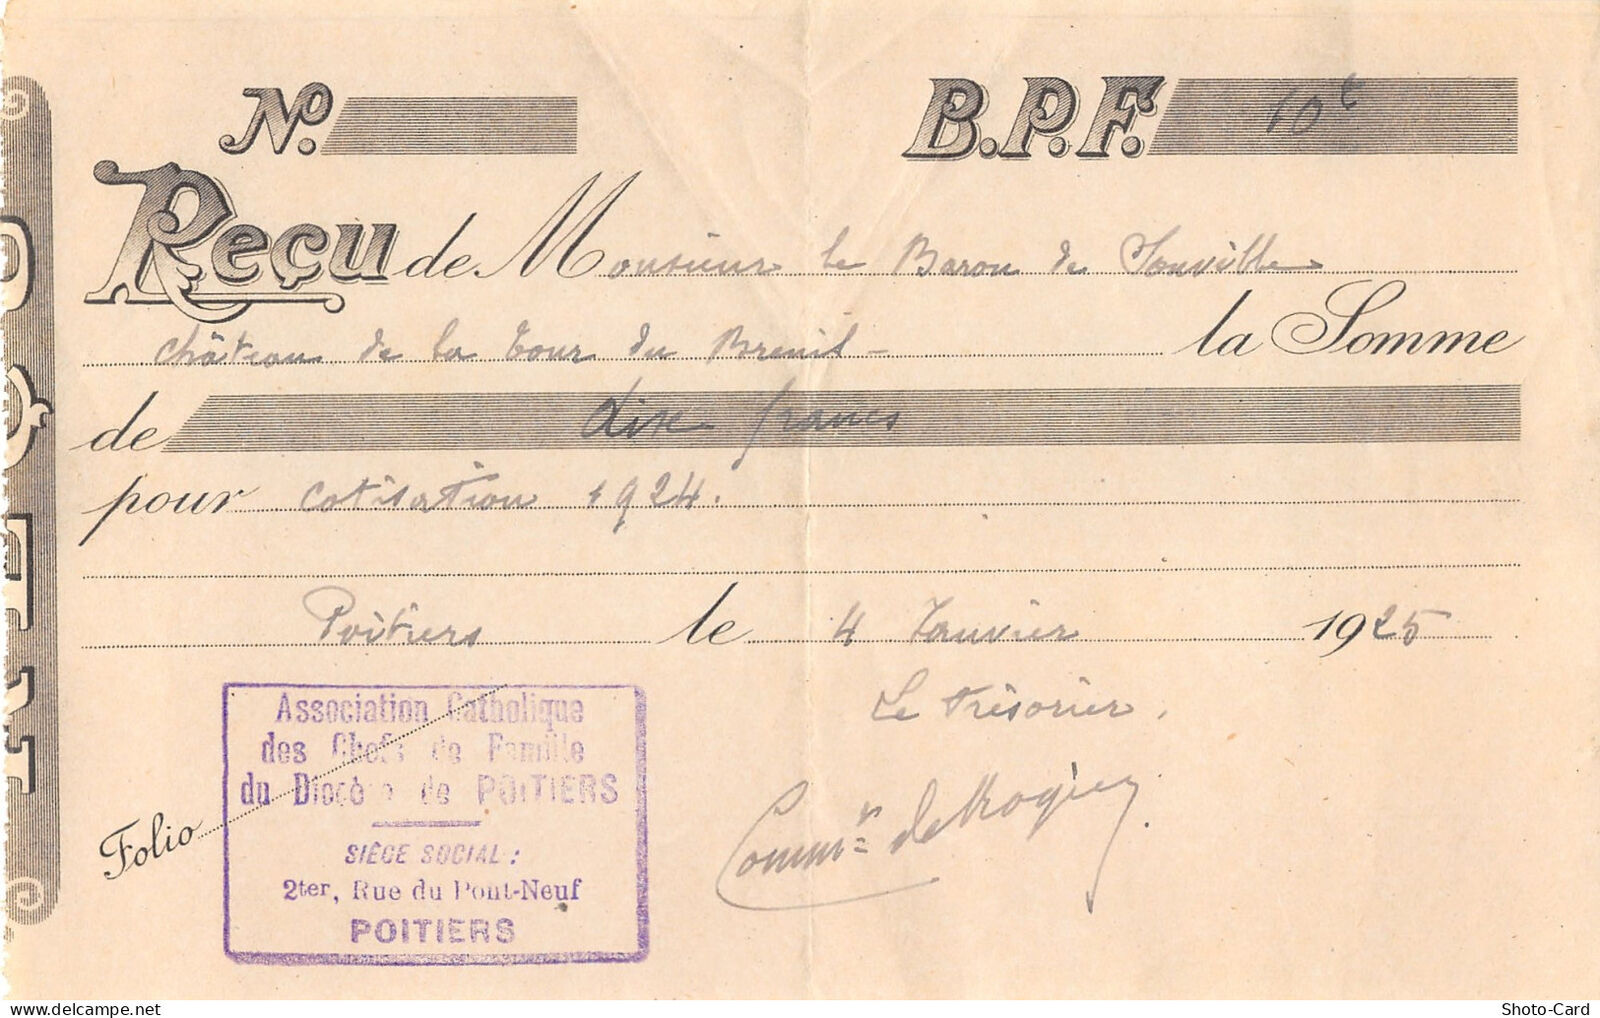 1925 ASSOC CATHOLIQUE DES CHEFS FAMILLE POITIERS-LE BARON SOUVILLE AU CHATEAU LA